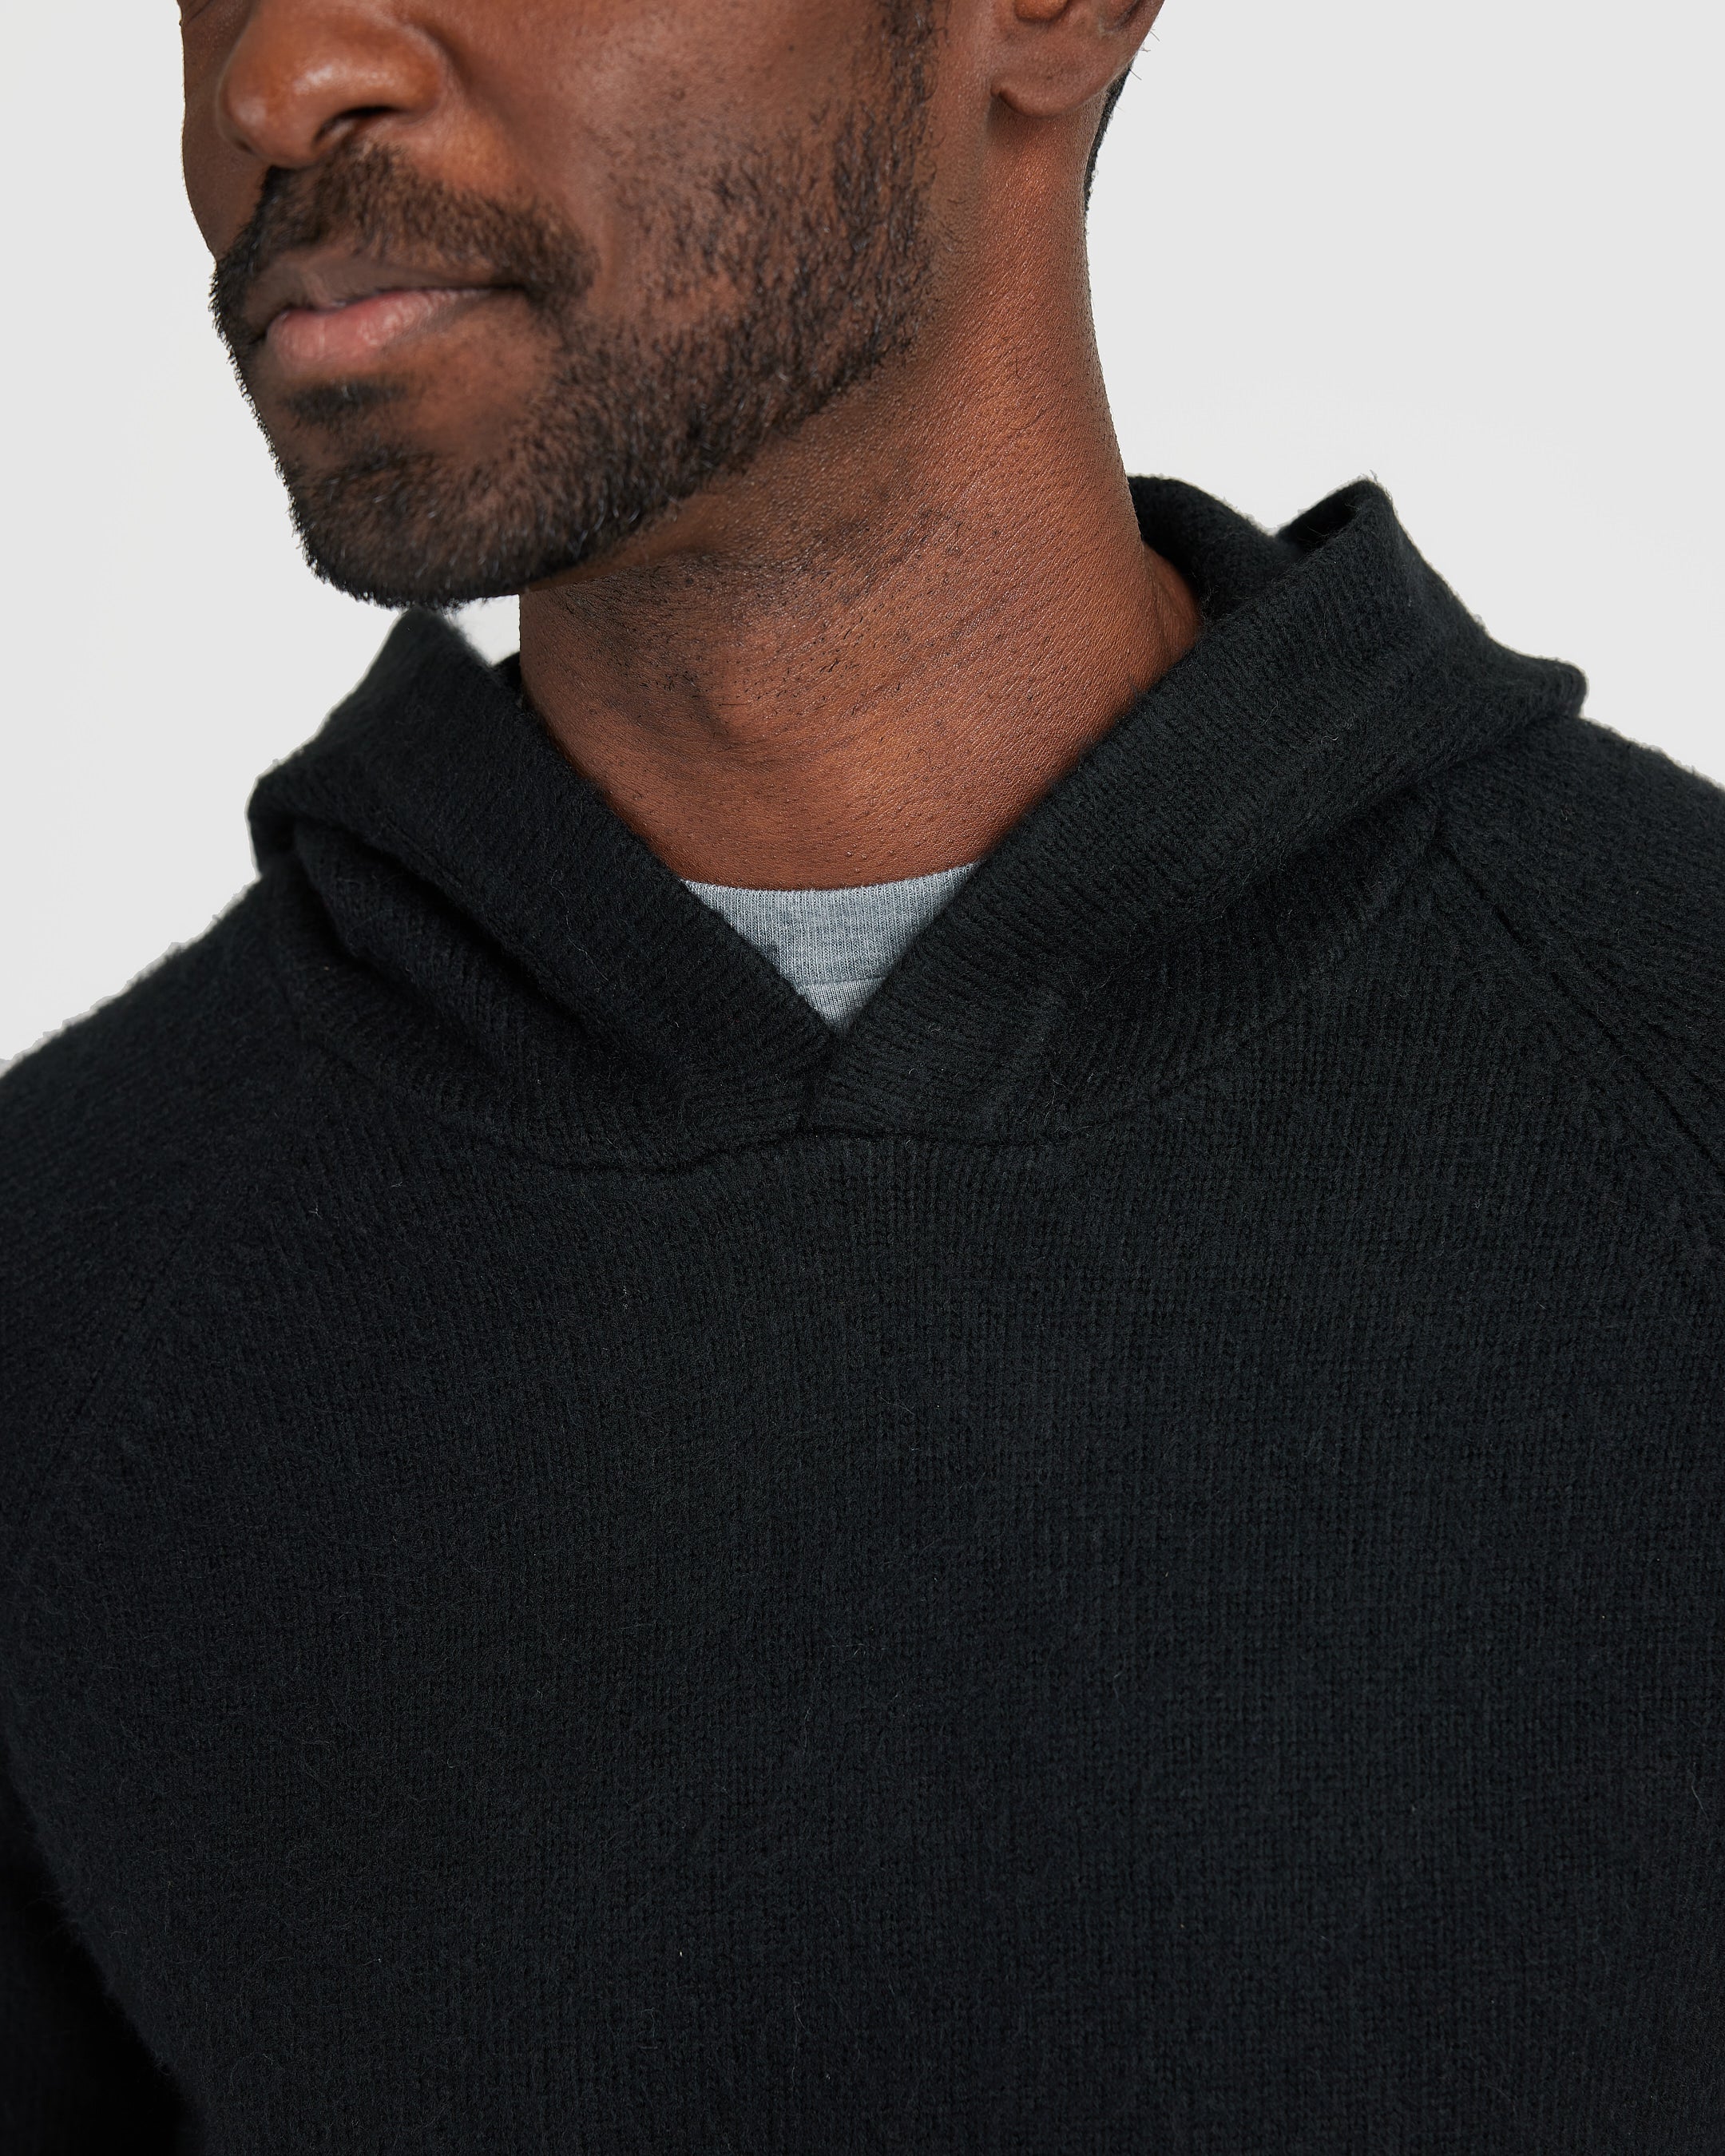 Black Sweater Hoodie